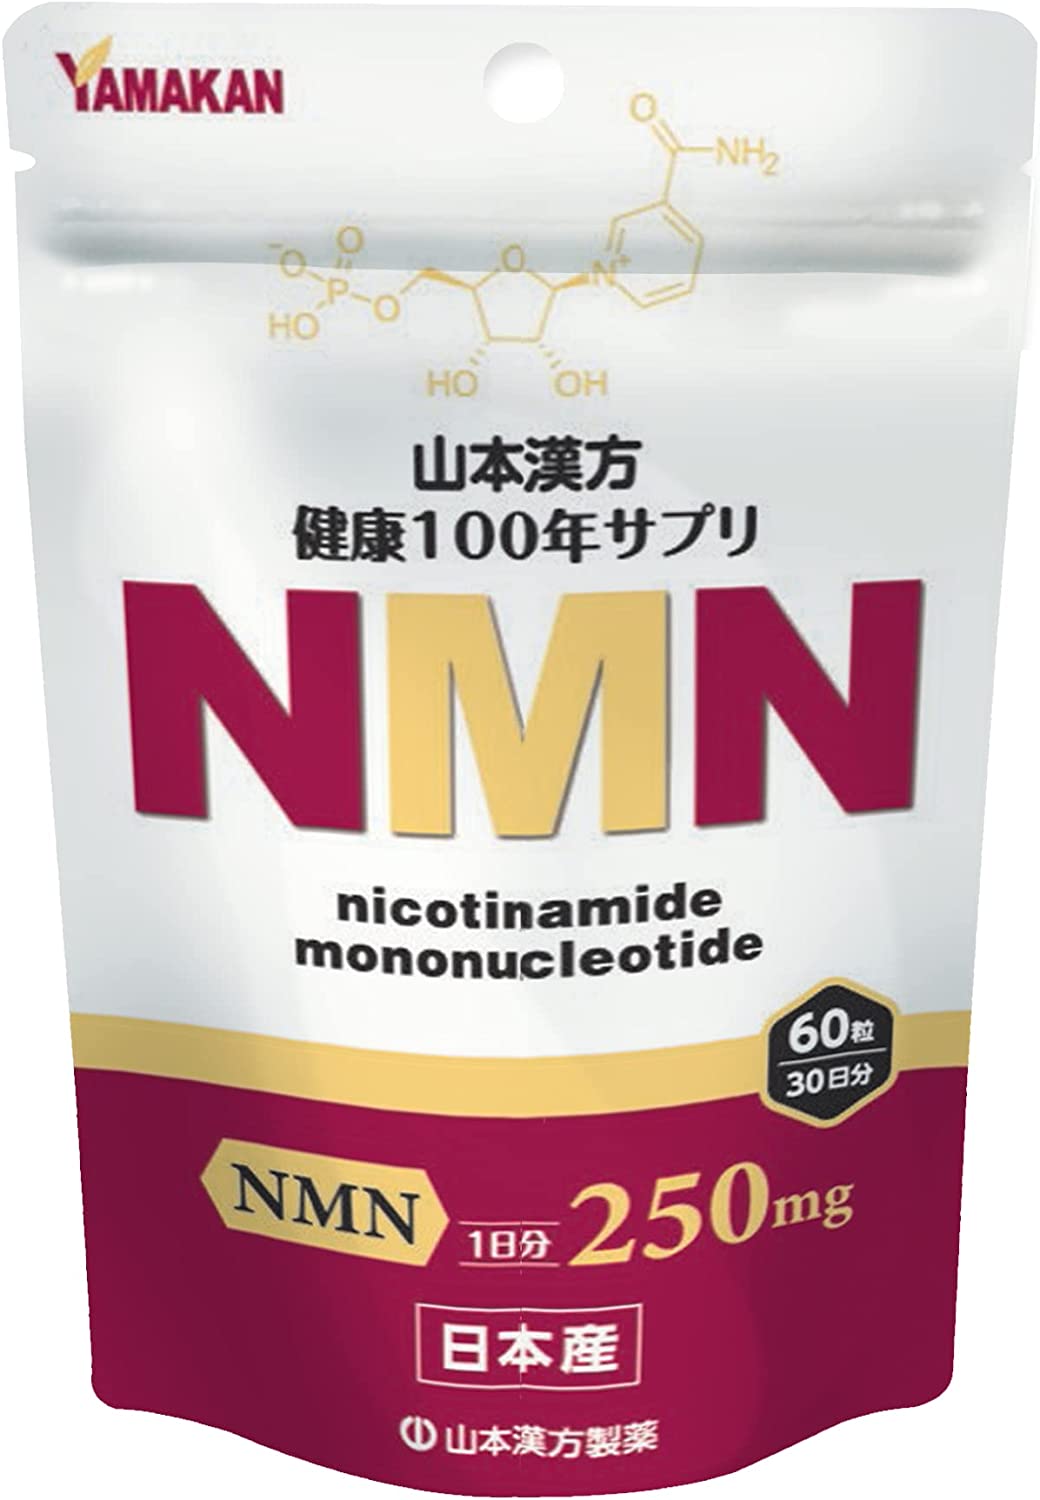 山本漢方NMN 60粒Nicotinamide MoNoncleotide